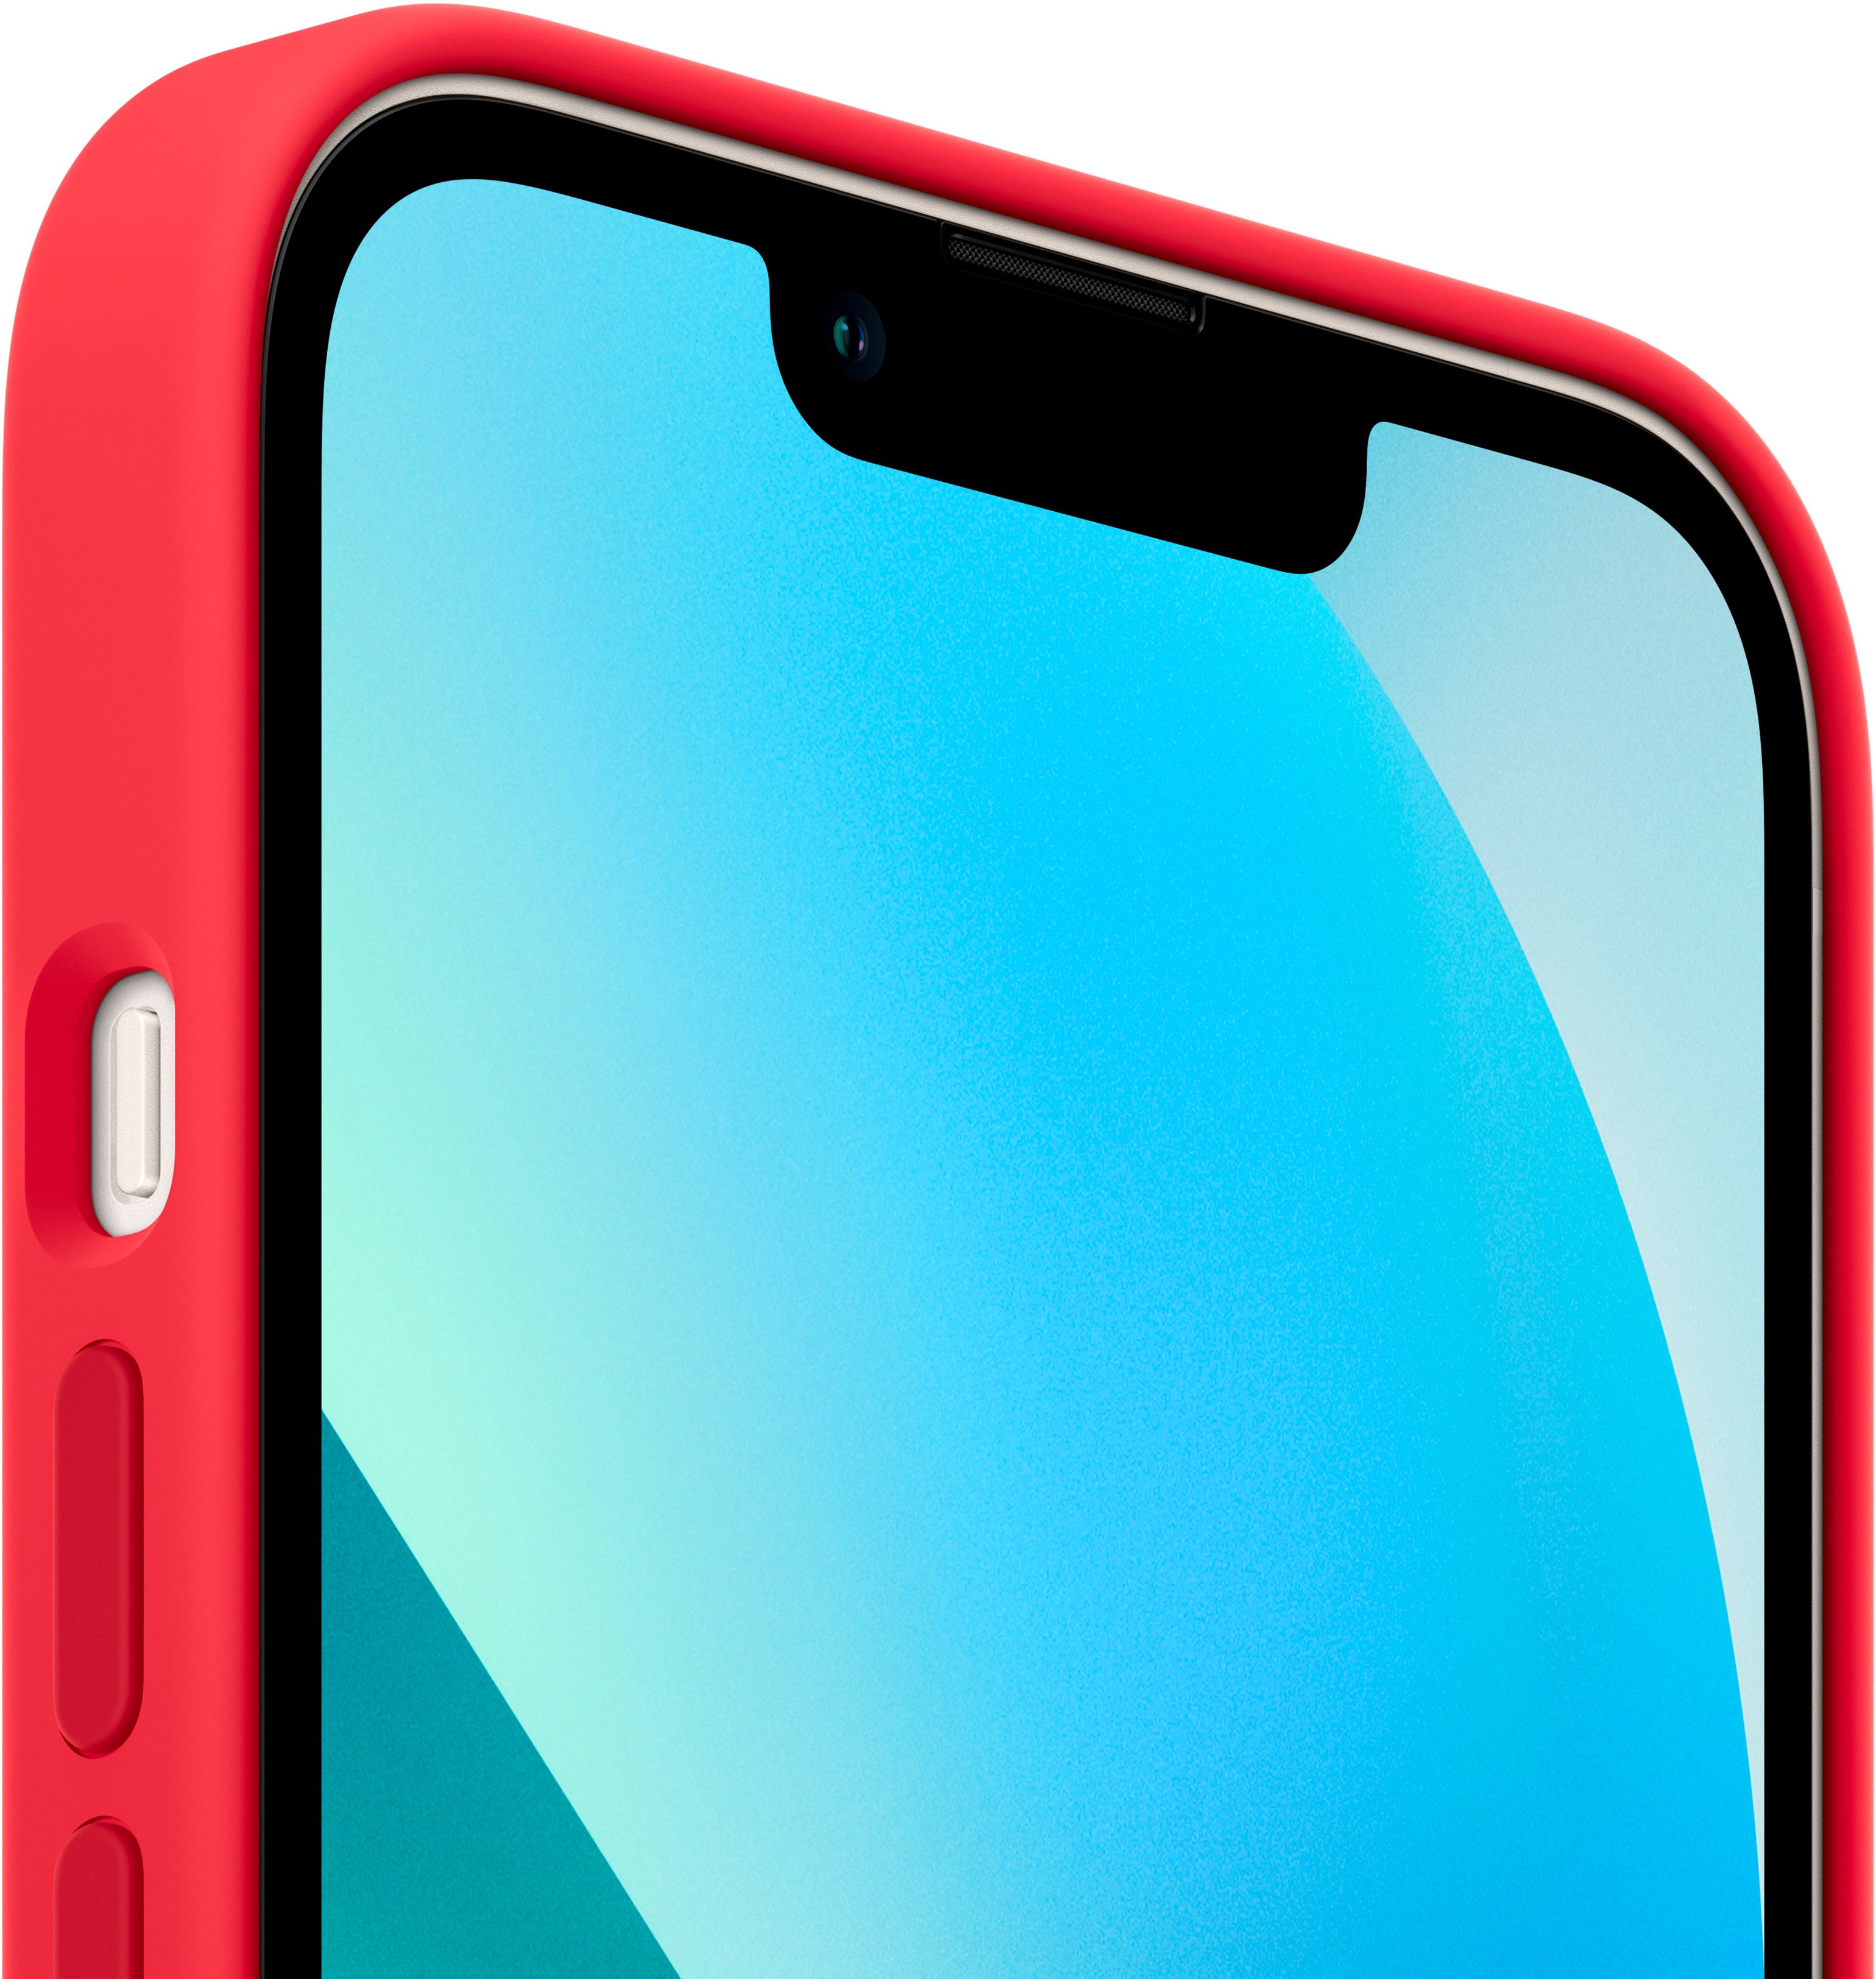 Red II phone case.